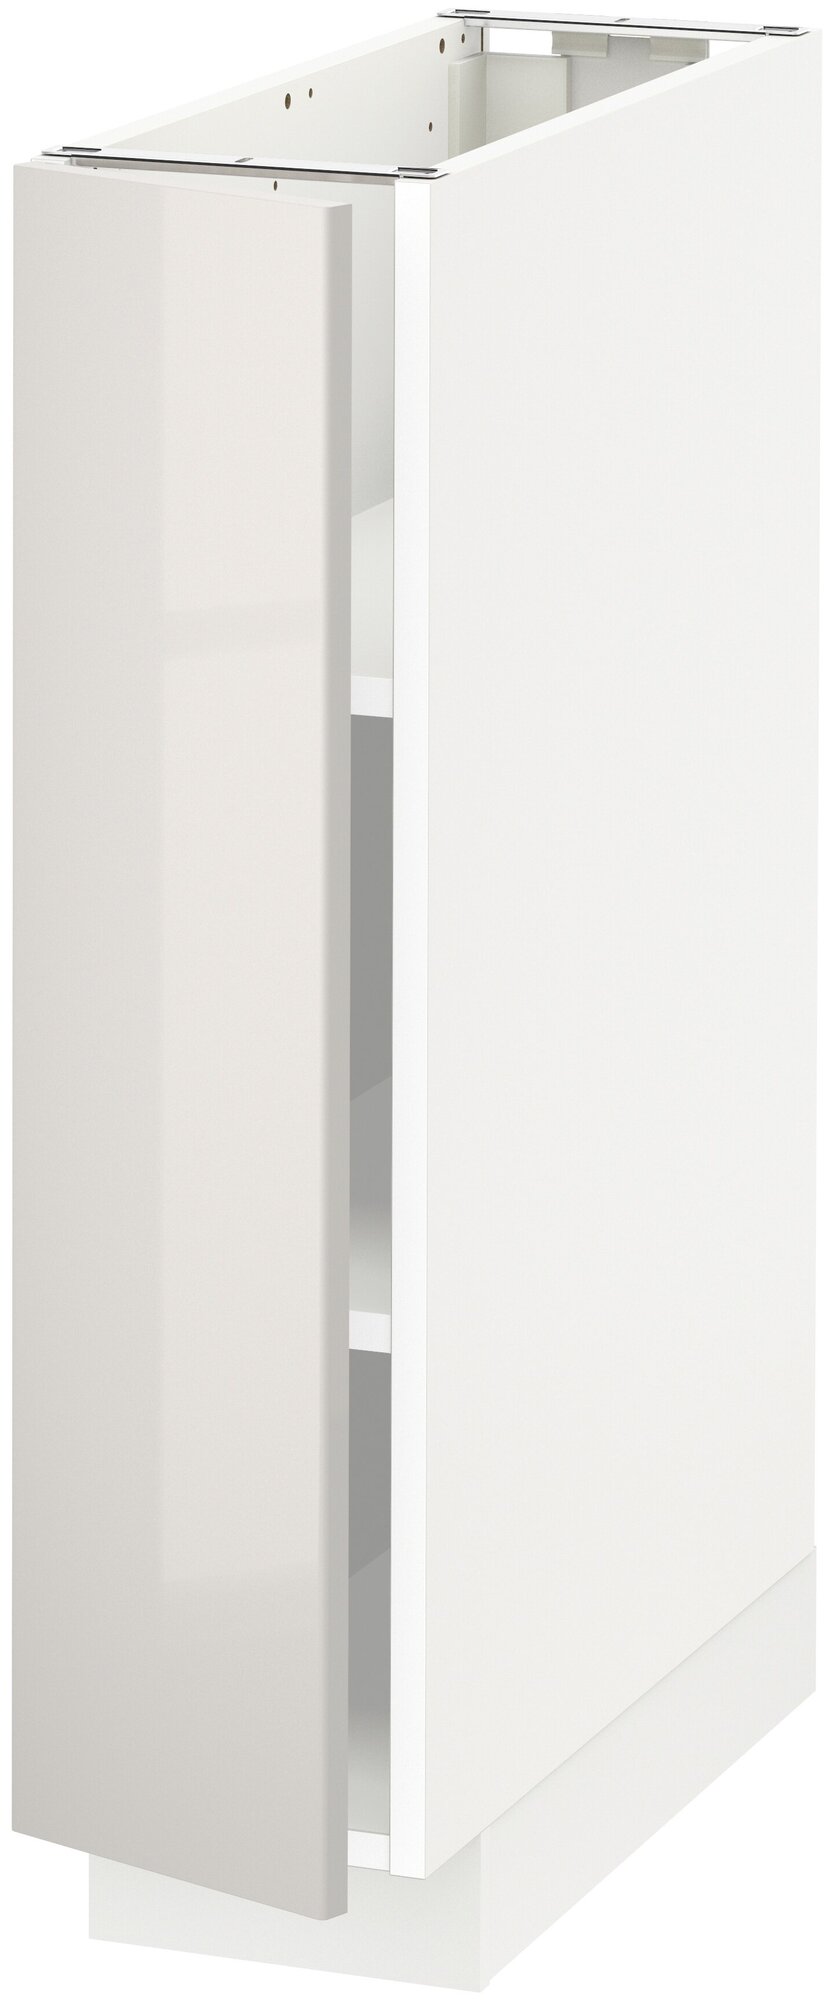 METOD метод напольный шкаф с полками 20x60 см белый/Рингульт светло-серый - фотография № 1